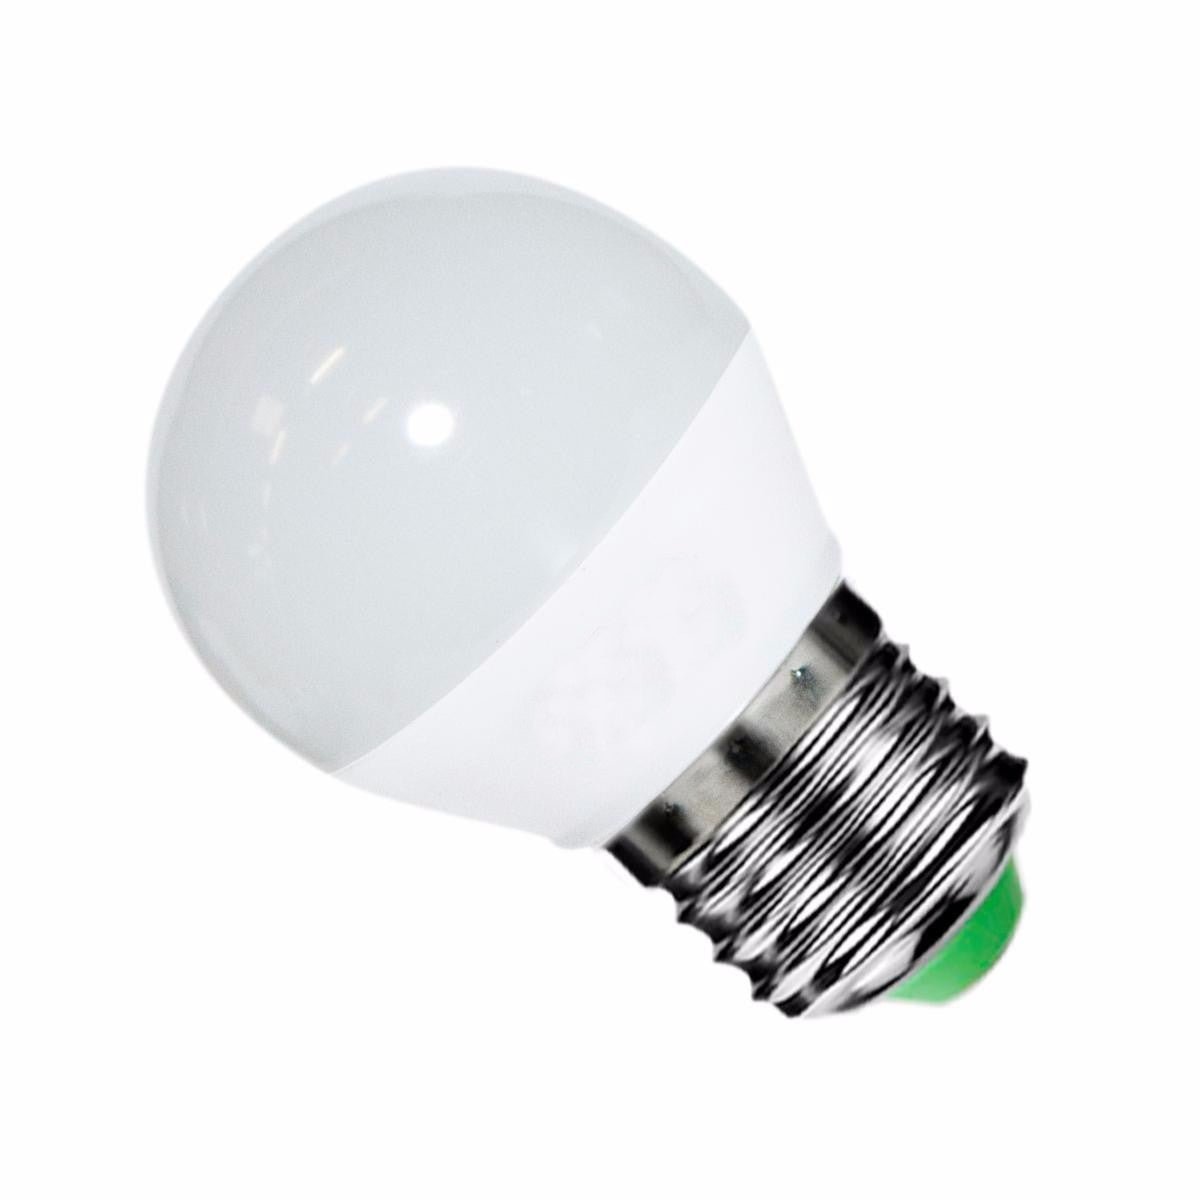 Ampoule t5 LED - TYPE 44 - Rabais de 20%